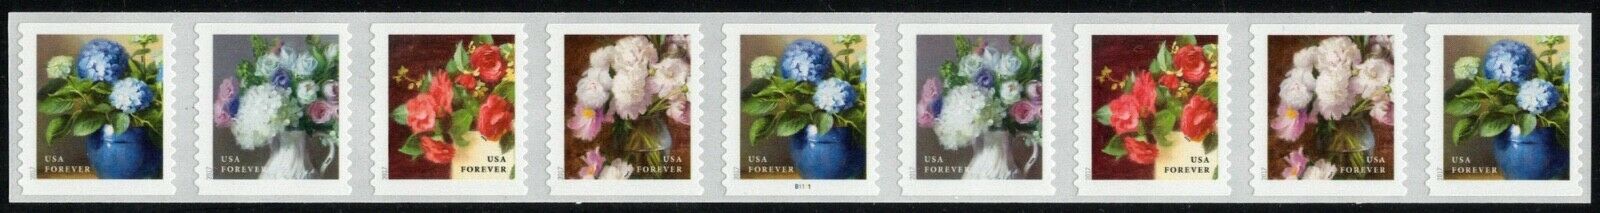 Usa Pnc9 Sc. 5236a (49c) Garden Flowers 2017 Mnh B1111